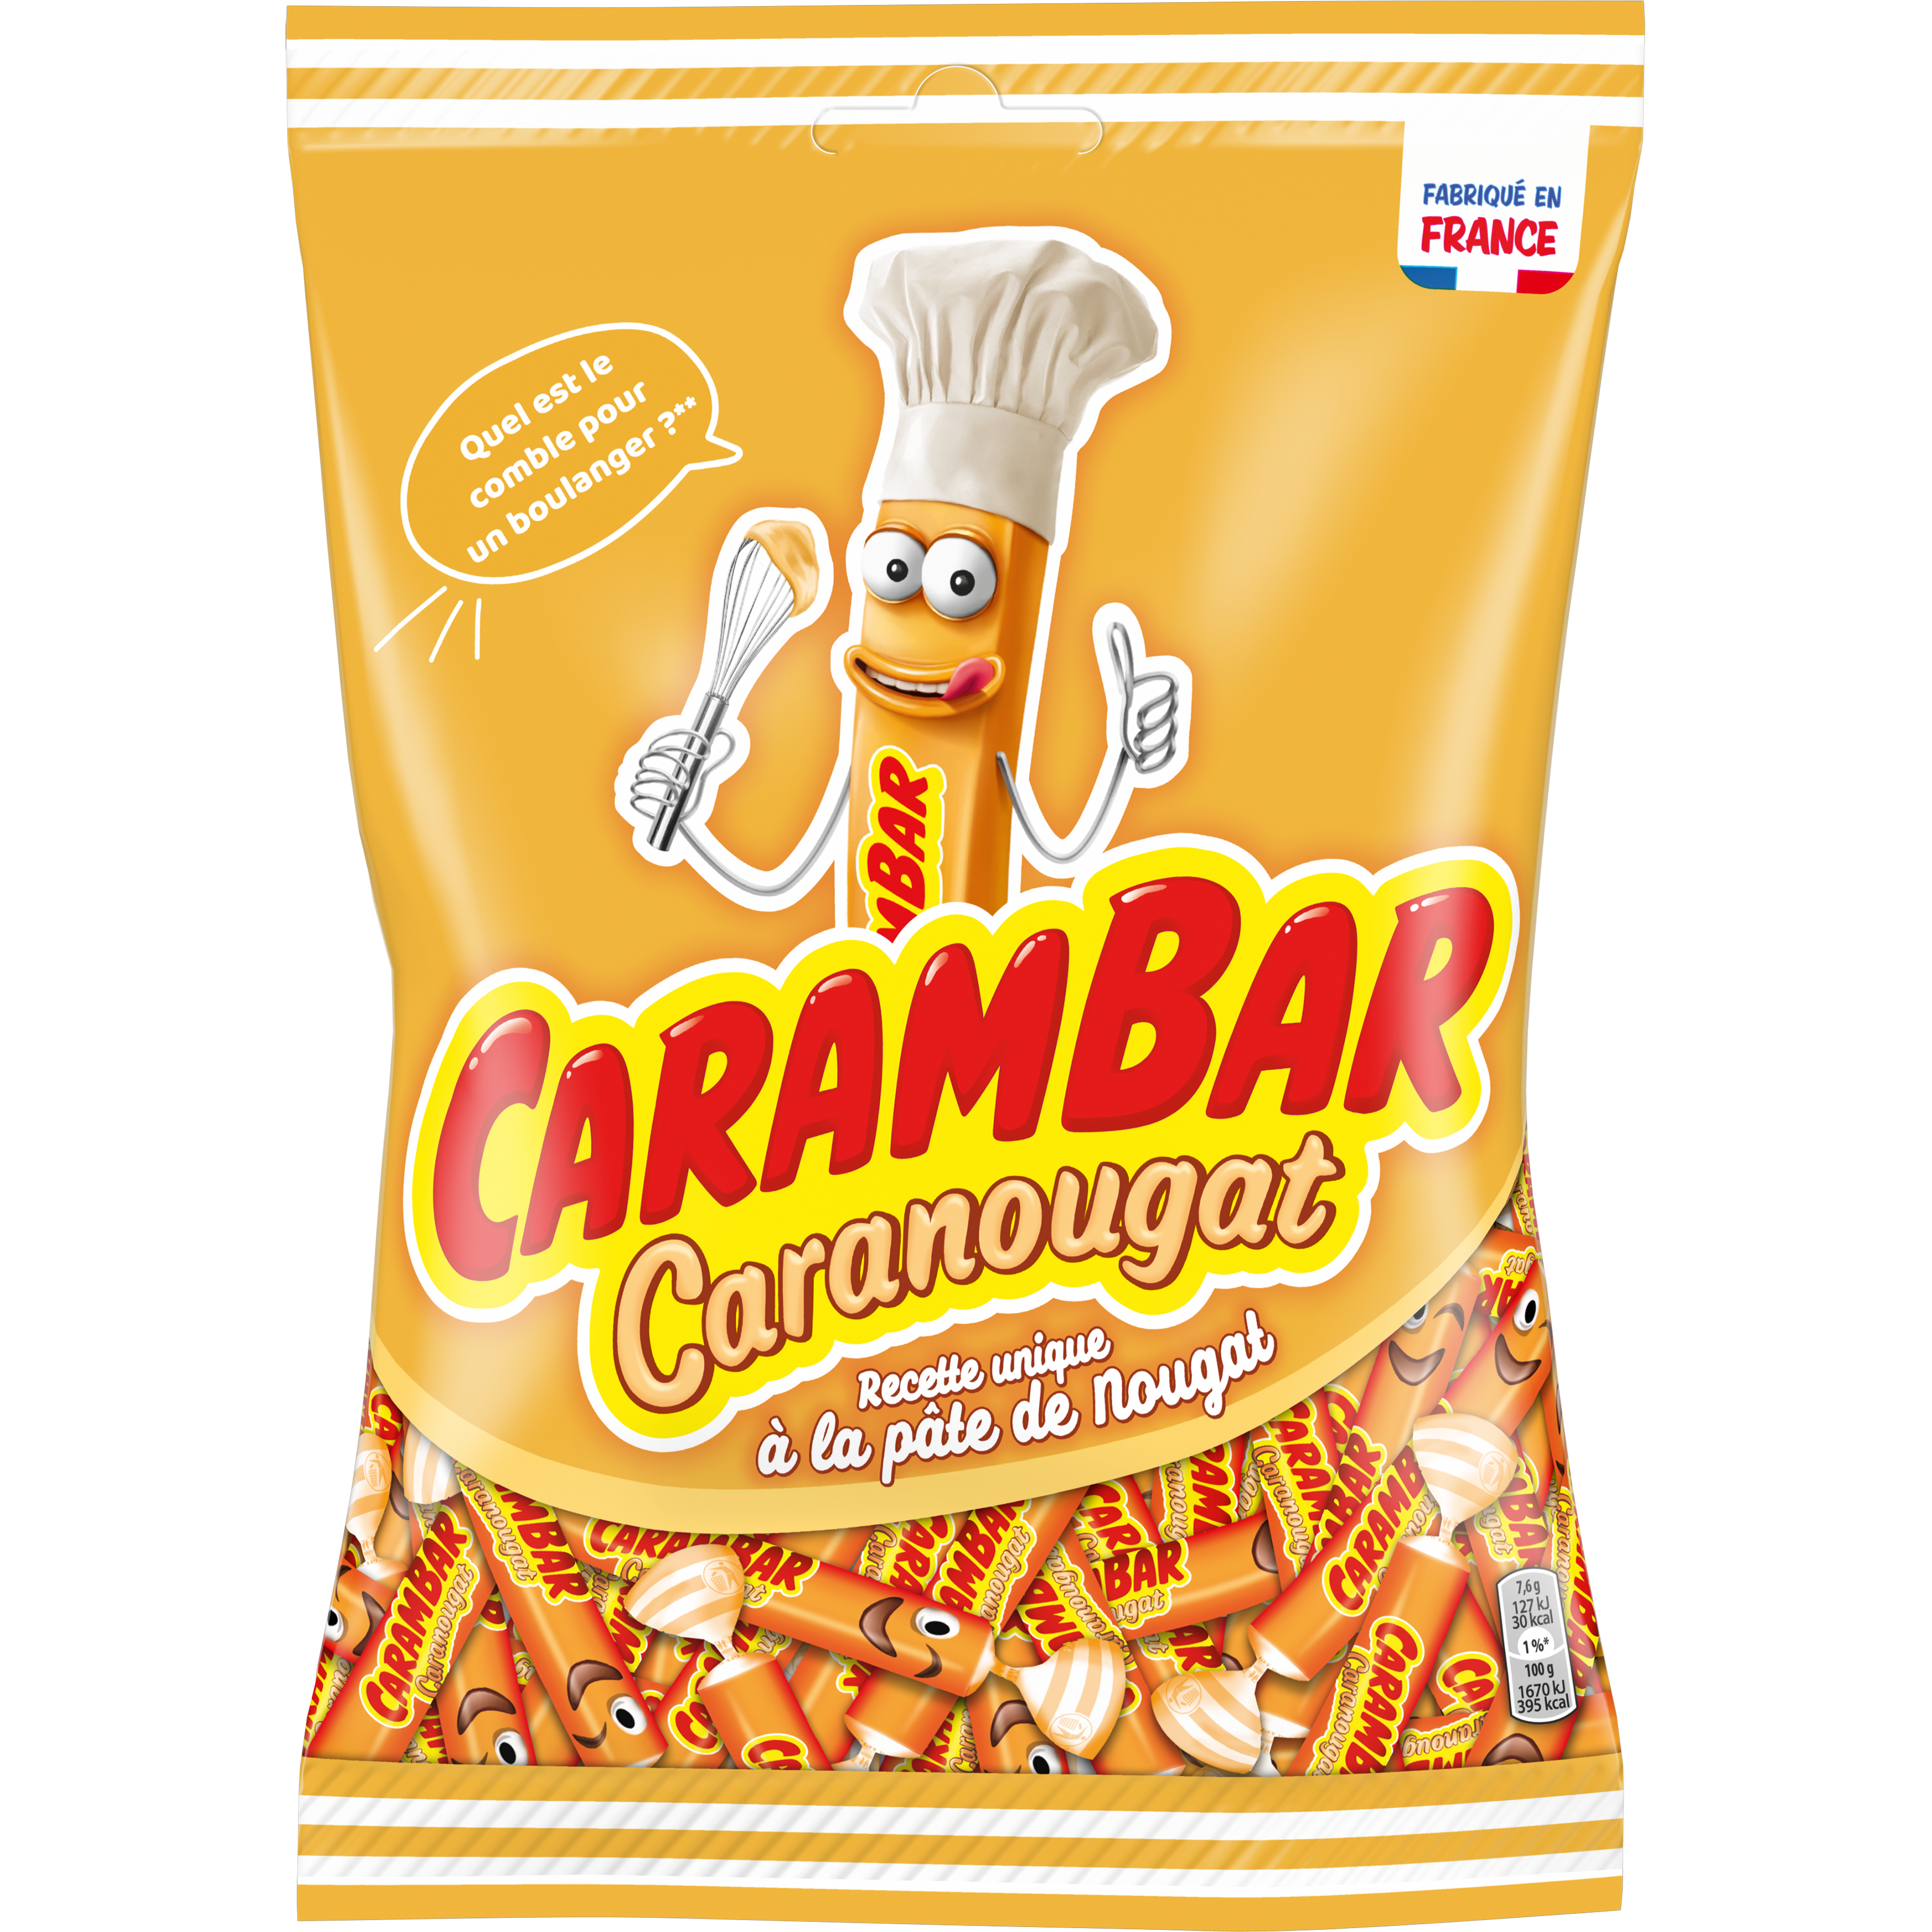 Carambar Caranougat - Bonbons années 80 - Génération Souvenirs